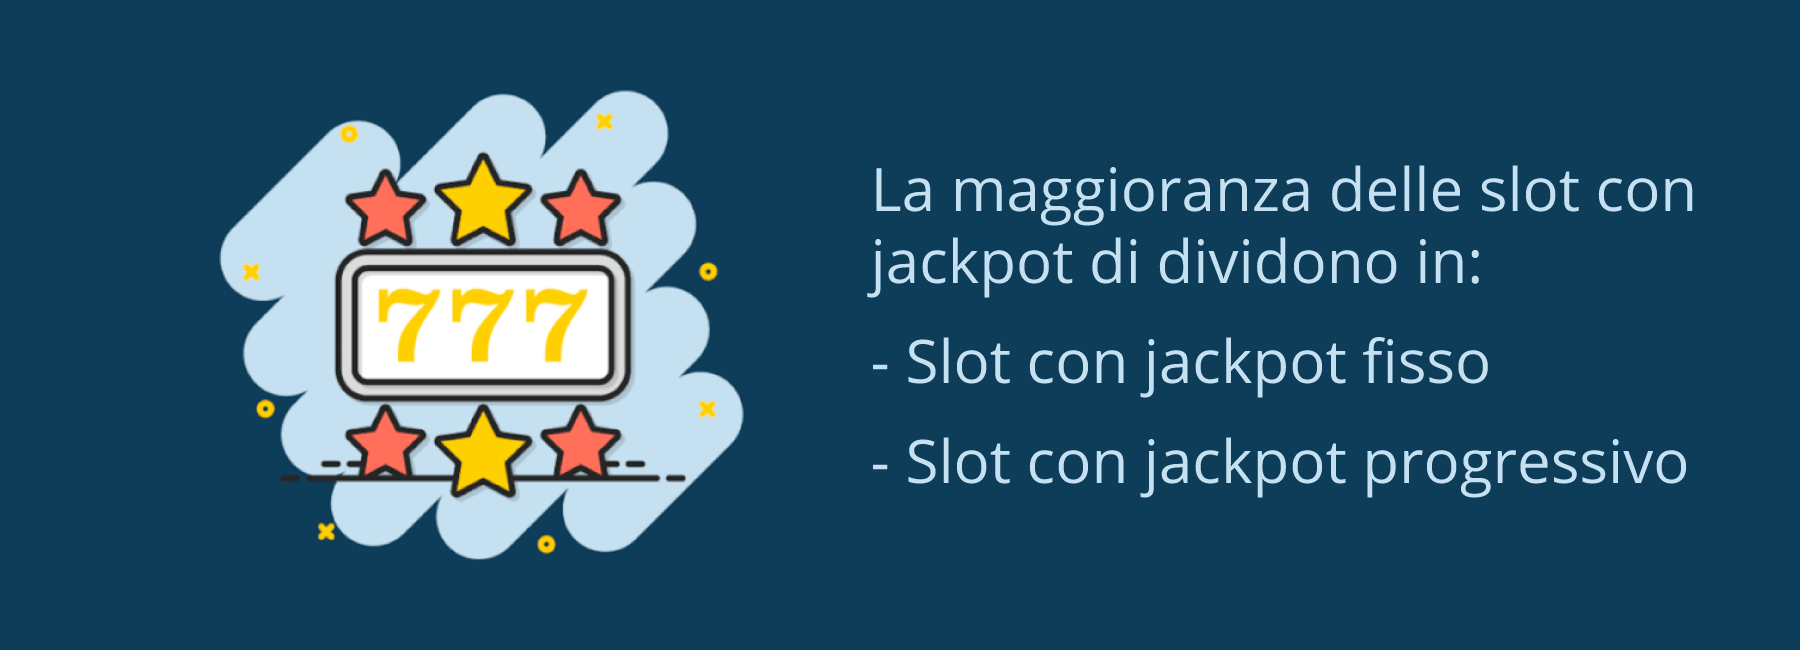 Come funzionano le slot con jackpot?